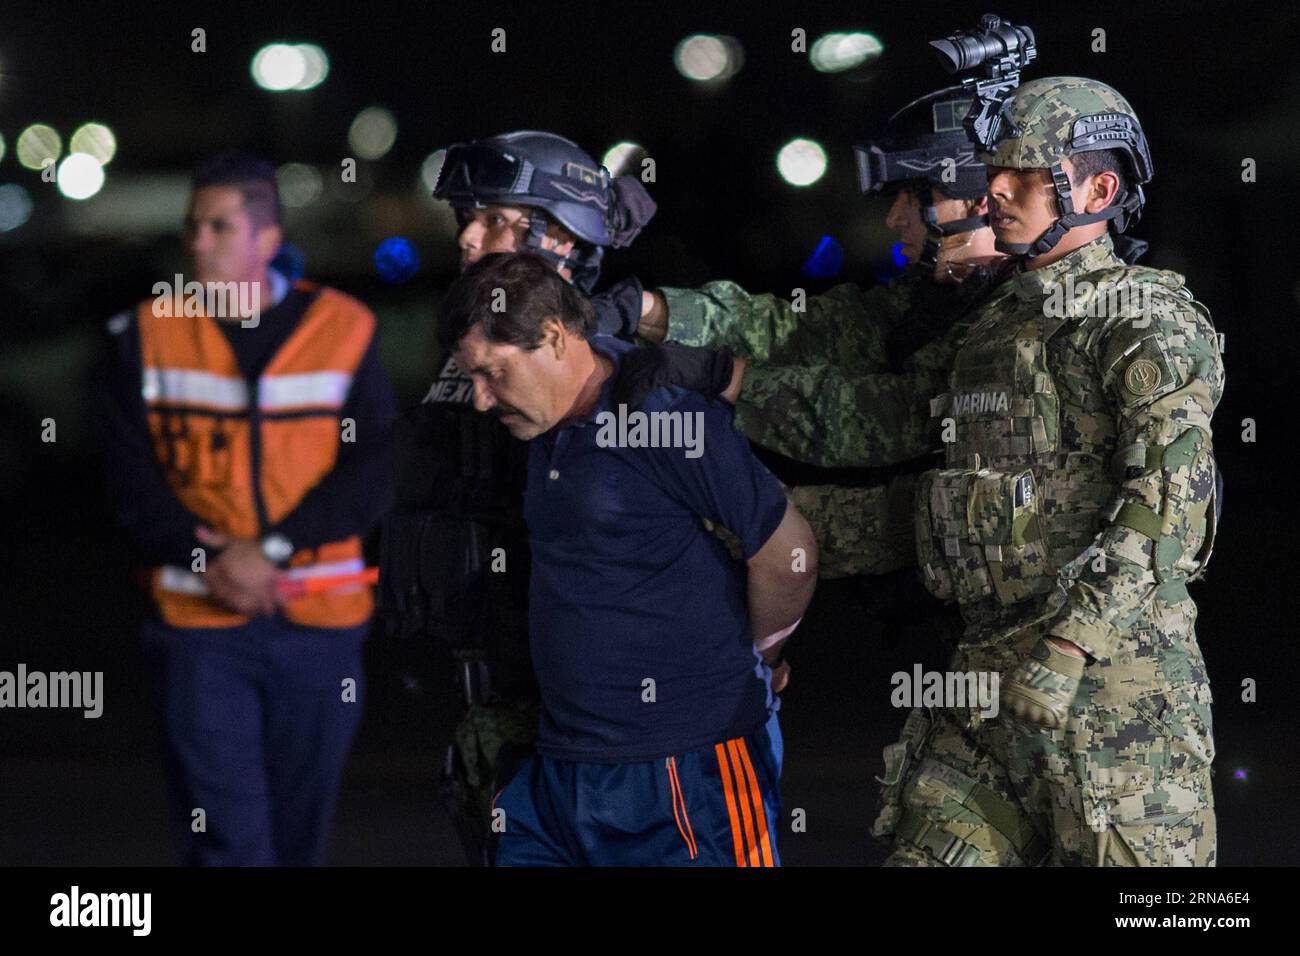 (160109) -- MEXICO, 8 janvier 2016 -- des soldats escortent Joaquin Guzman Loera, alias El Chapo , à son arrivée au hangar du bureau du procureur général, à Mexico, capitale du Mexique, le 8 janvier 2016. Après un raid tôt le matin dans la ville de Los Mochis, dans l État du Sinaloa, dans le nord-ouest du Mexique, par la police et les marines mexicaines vendredi, le chef du cartel du Sinaloa, Joaquin Guzman Loera, a été repris, six mois après sa deuxième évasion de prison. MEXICO-MEXICO CITY-SECURITY-GUZMAN LOERA-RECAPTURE PedroxMera PUBLICATIONxNOTxINxCHN 160109 Mexico Jan 8 2016 soldats escorte Joaquin Guzman Loera A. Banque D'Images